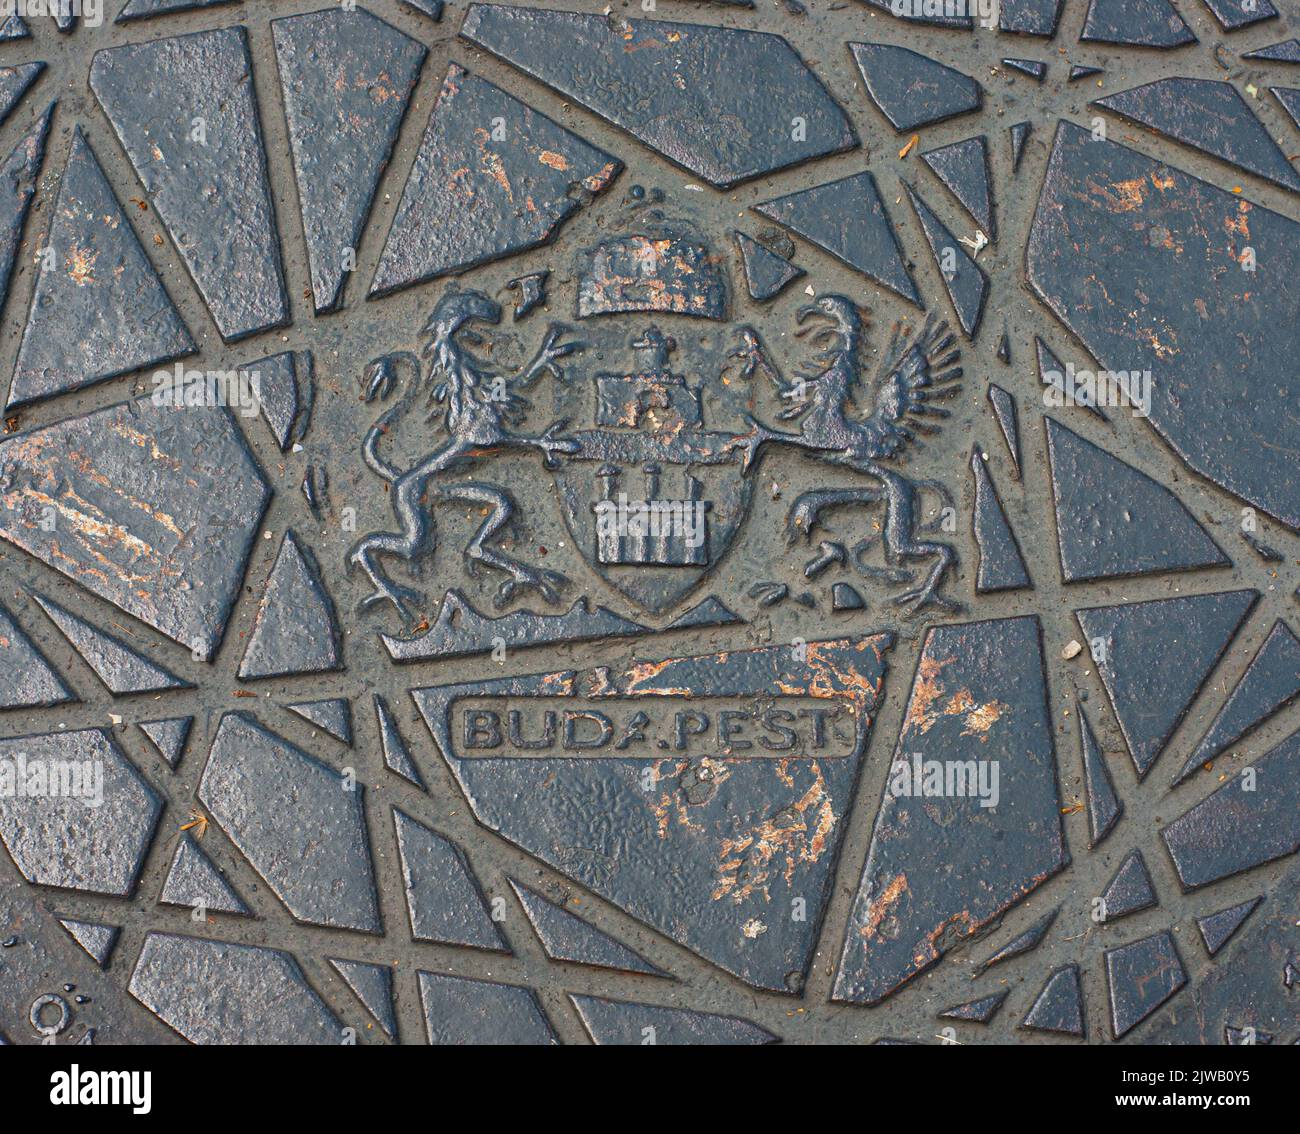 Ammira il primo piano di una botola fognaria sulla strada di Budapest, Ungheria. BUDA.PEST ha un periodo per mostrare due città. Vedere il simbolo dello stemma. Foto Stock